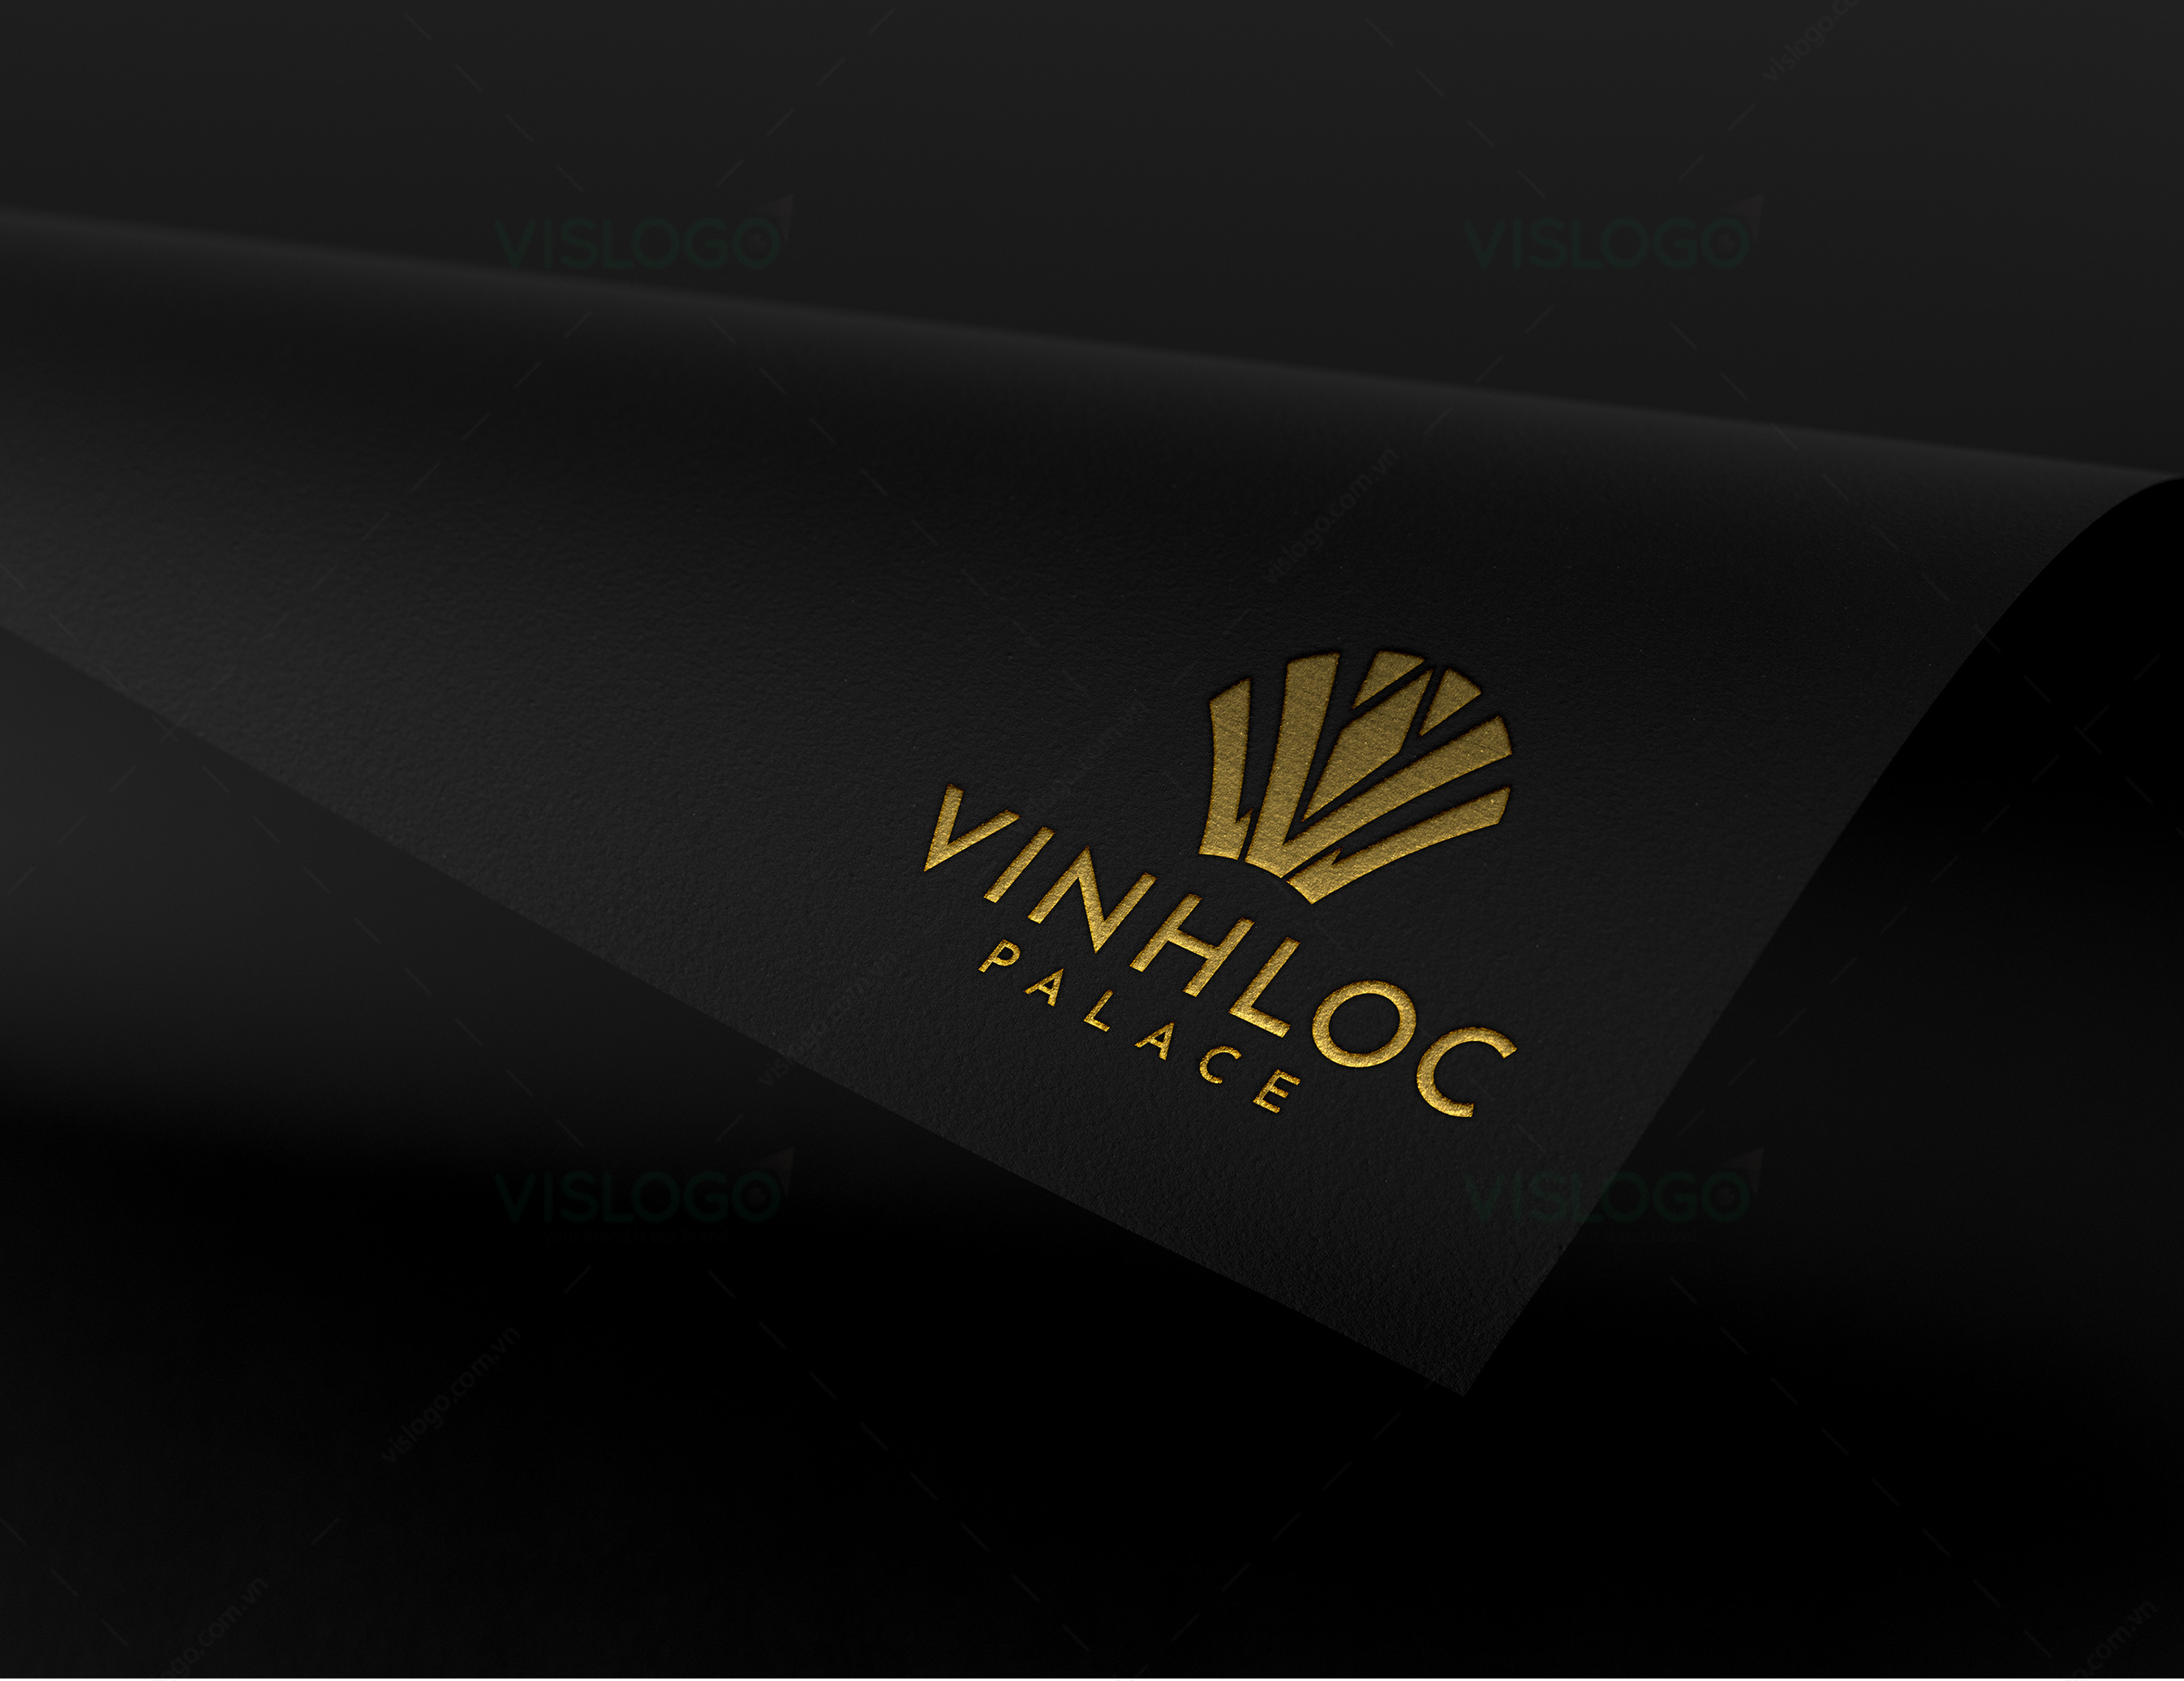 Thiết kế logo, nhận diện thương hiệu Trung tâm tiệc cưới hội nghị VINHLOC Palace